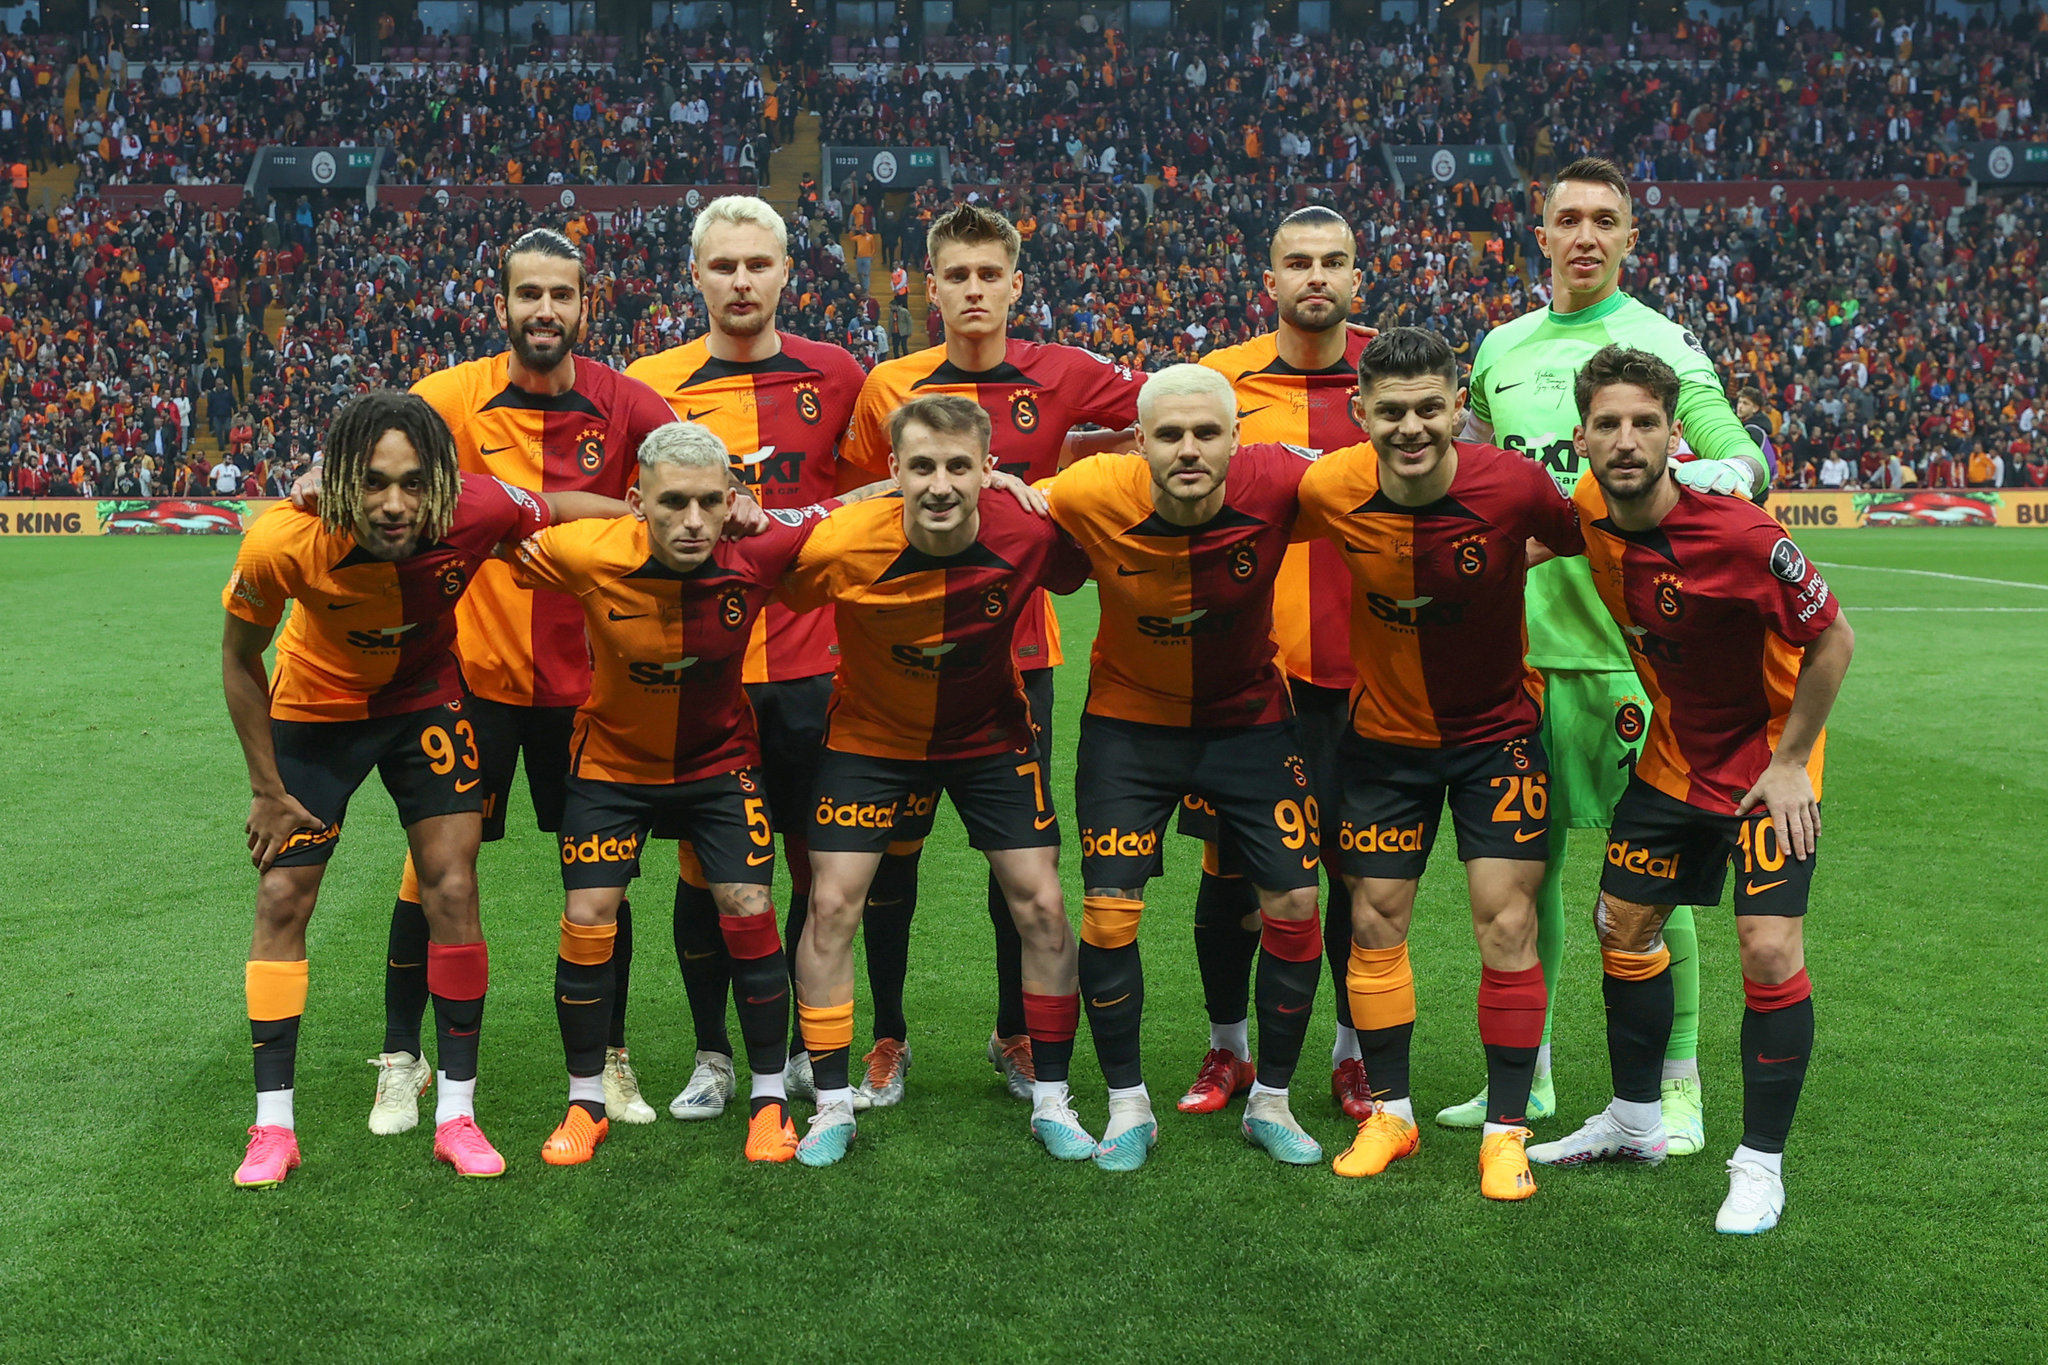 TRANSFER HABERİ: Galatasaray’dan Devler Ligi planı! Mertens’in yerine 10’un peşinde